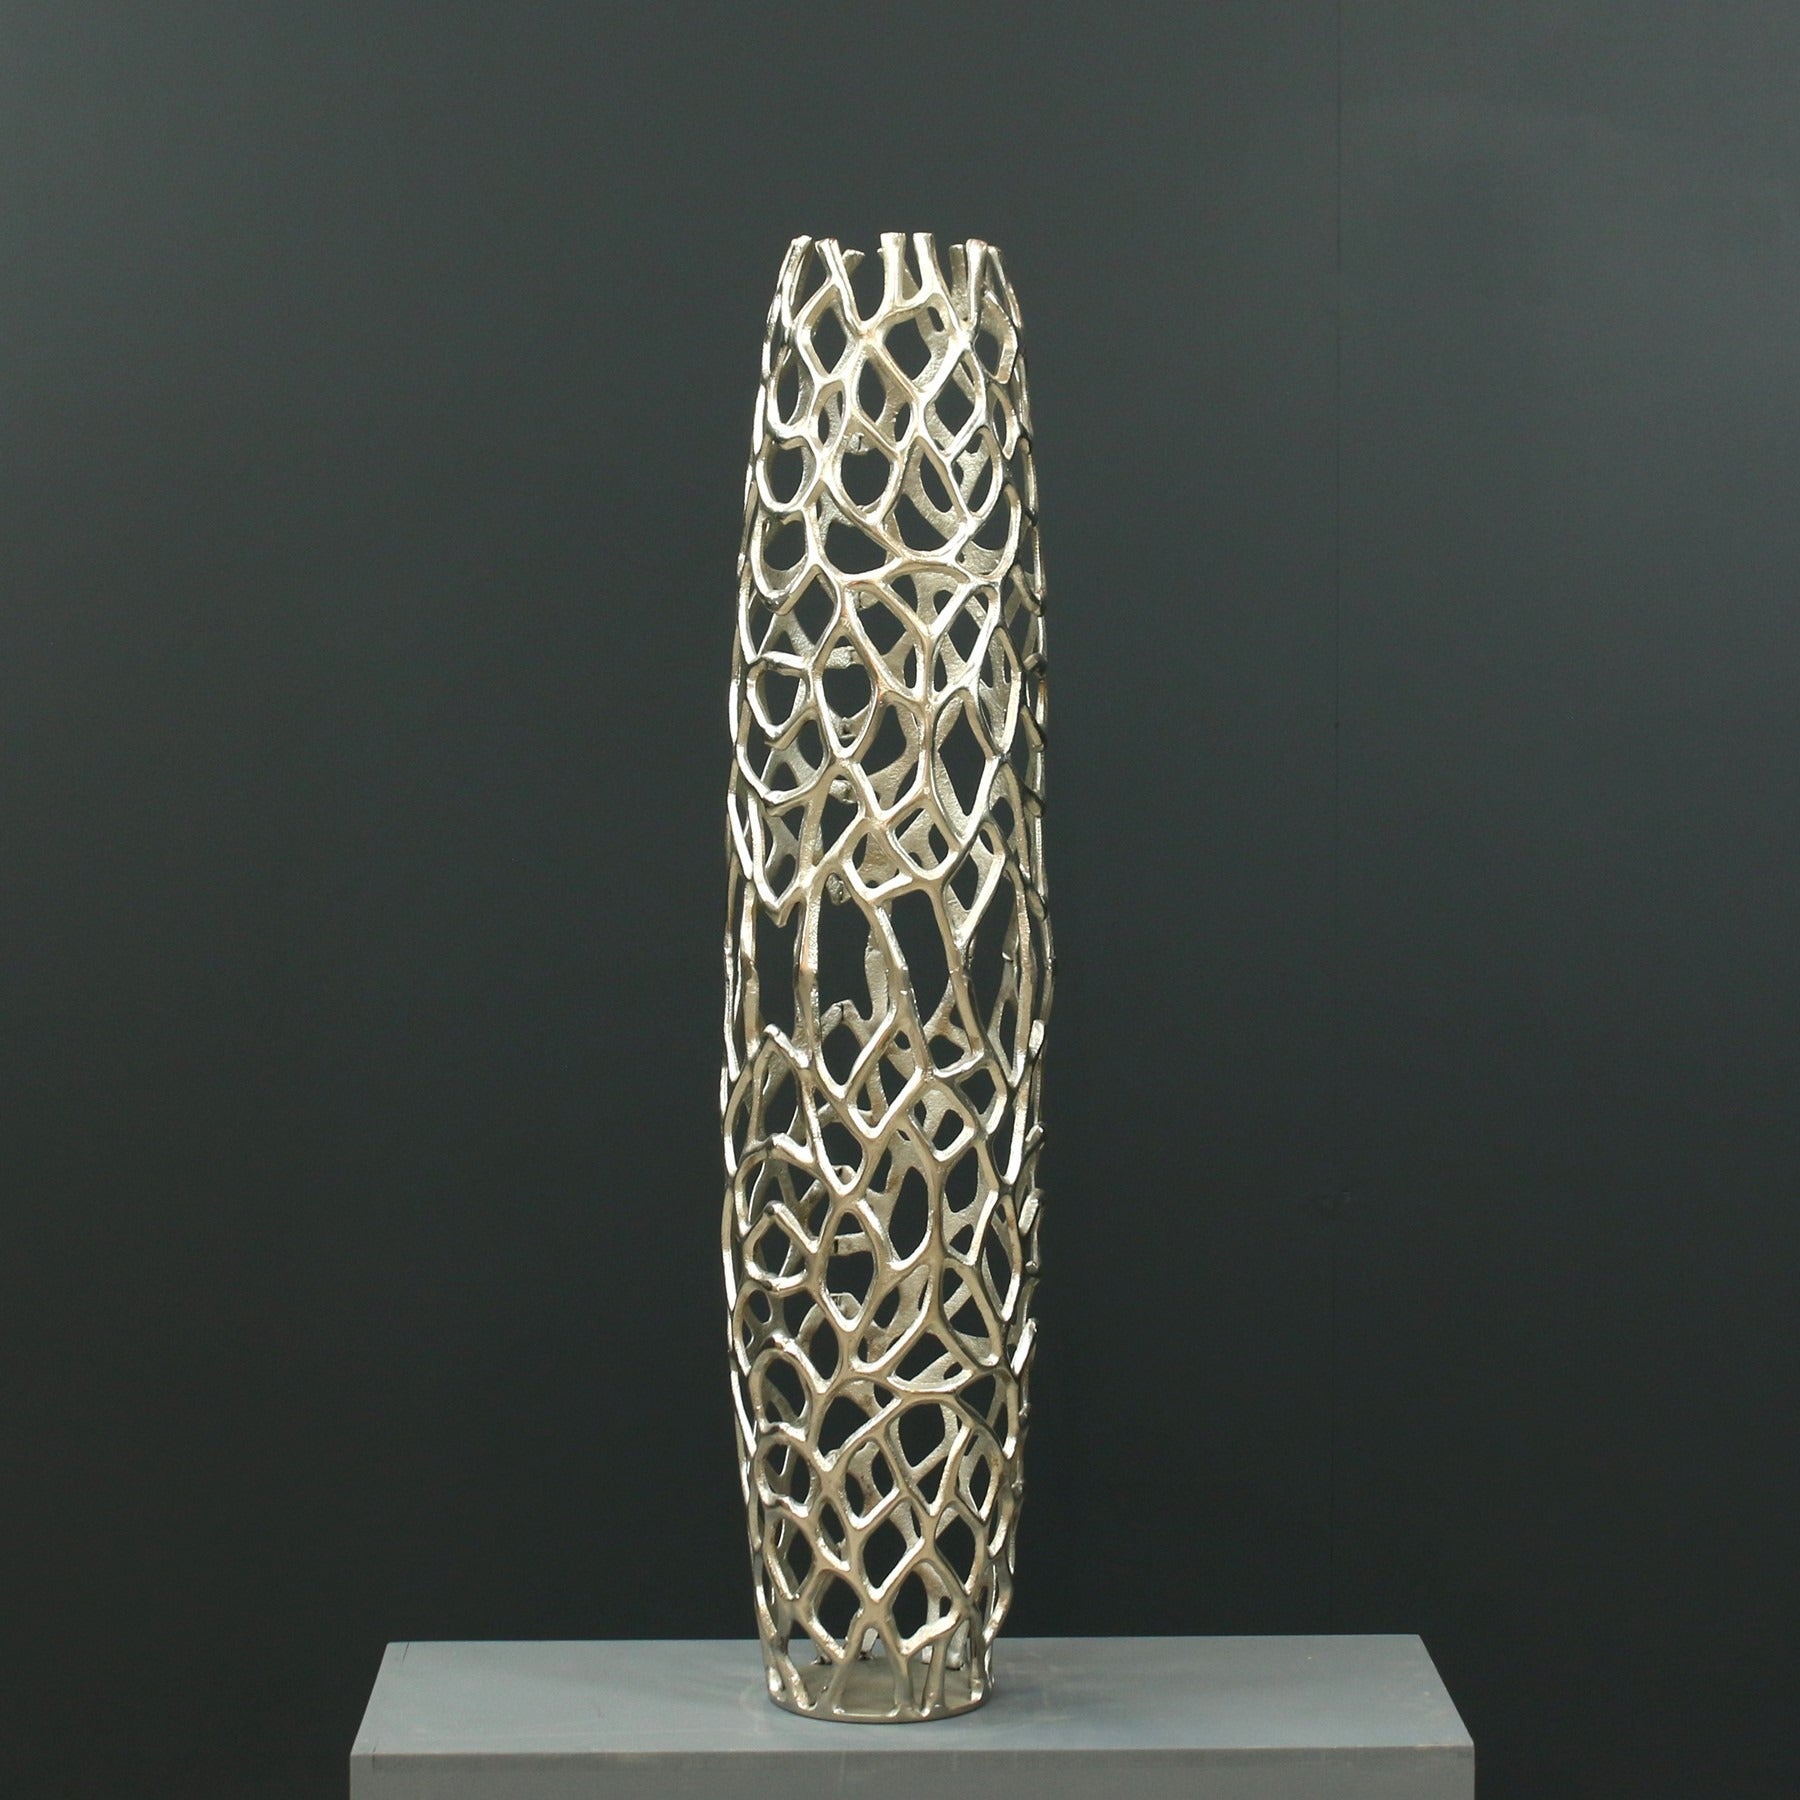 View Honeycomb Perforated Aluminium Vase 99cm x 22cm information